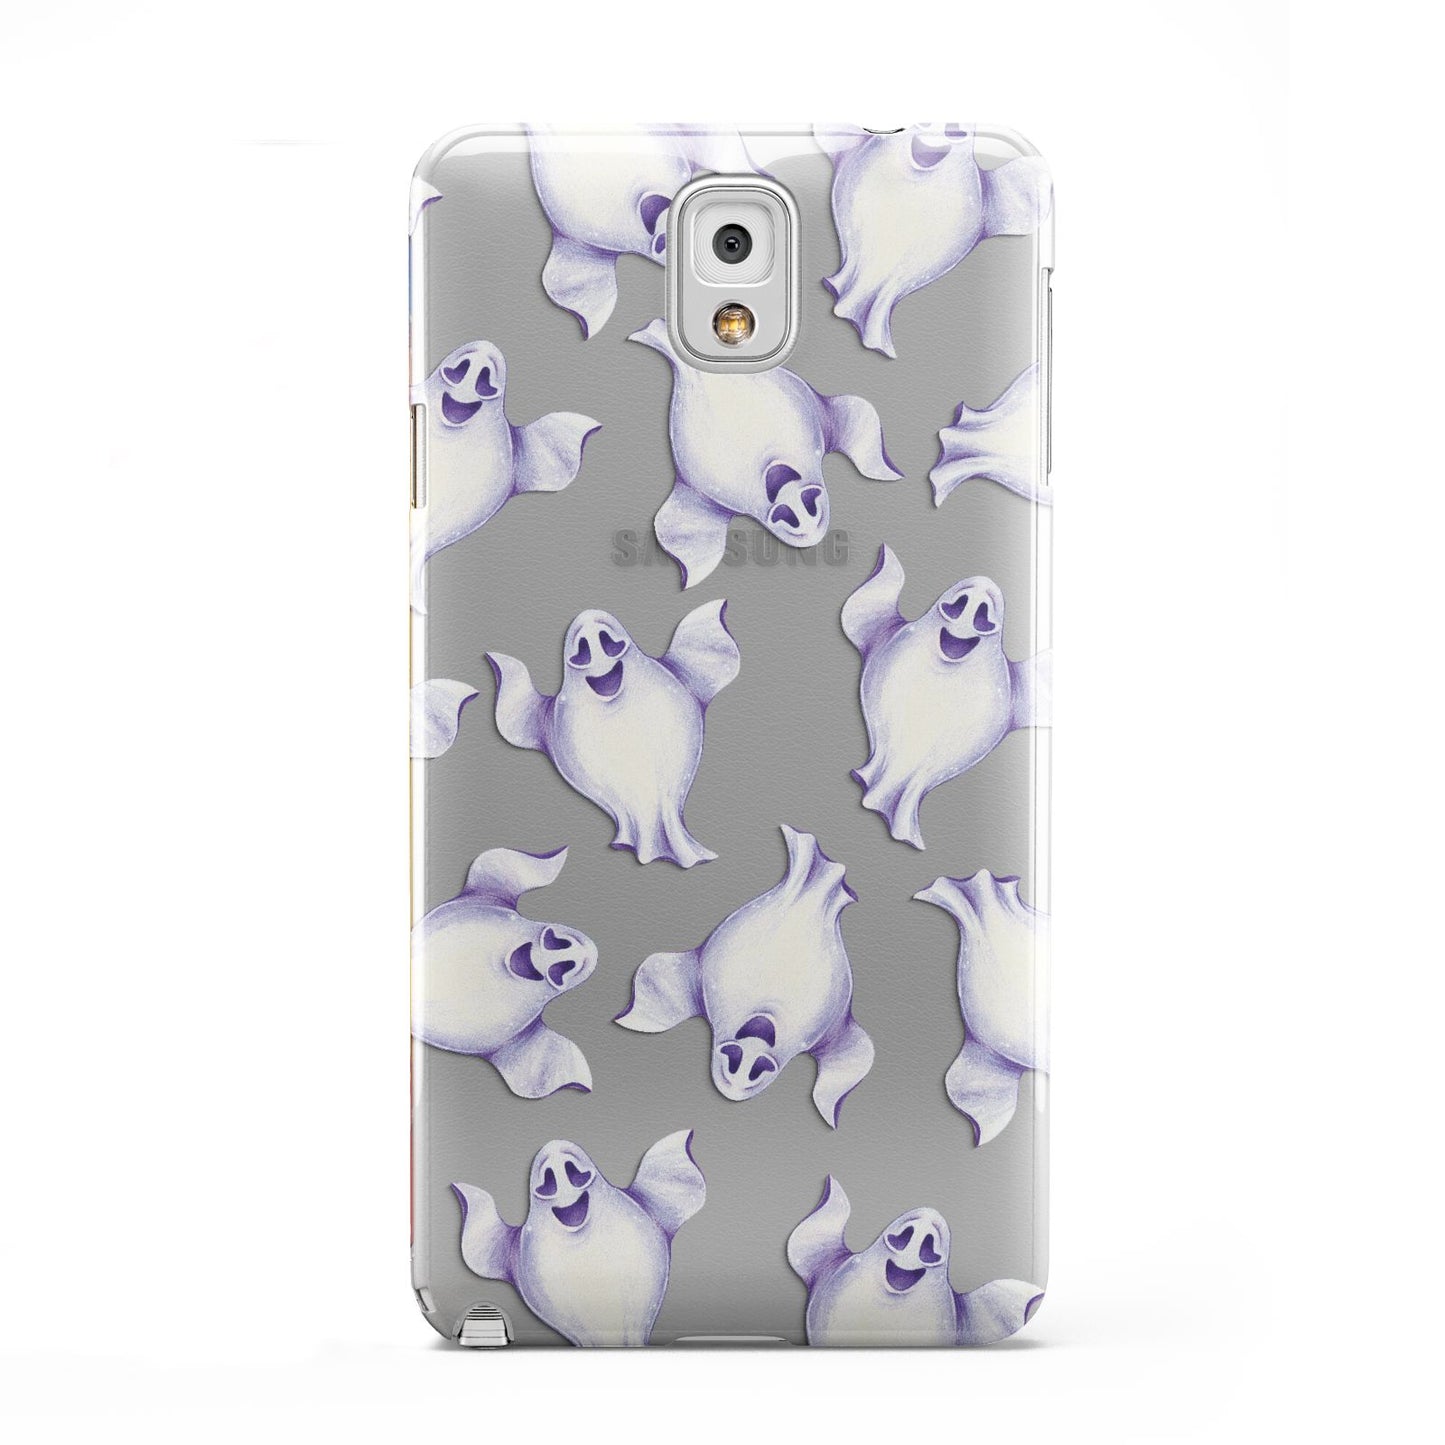 Ghost Halloween Samsung Galaxy Note 3 Case